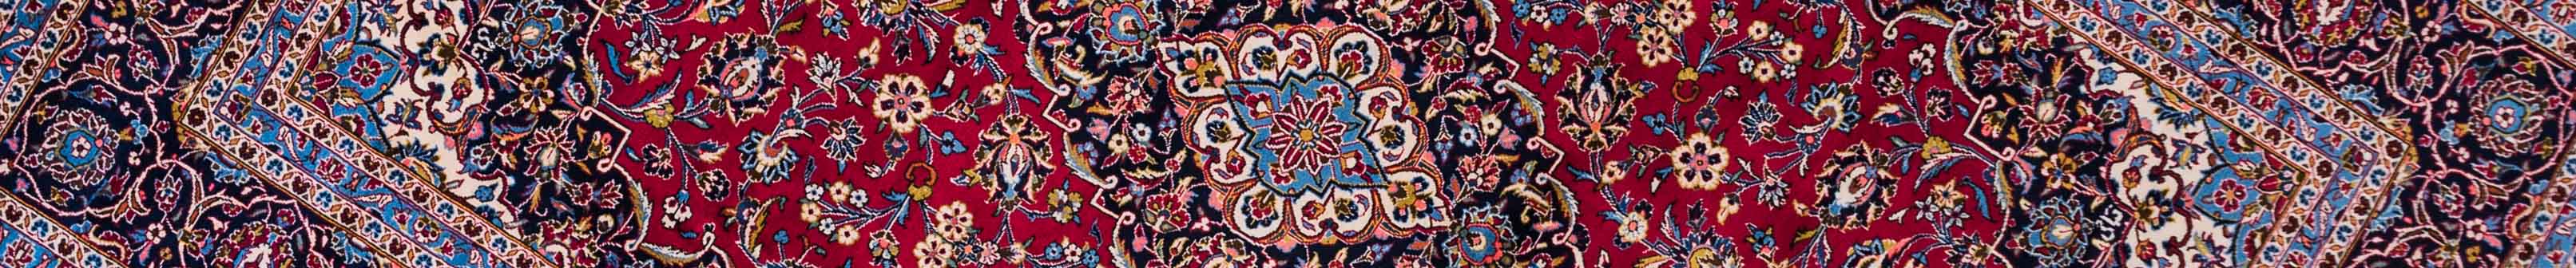 Kashan Persian Carpet Rug N1Carpet Canada Montreal Tapis Persan 2500